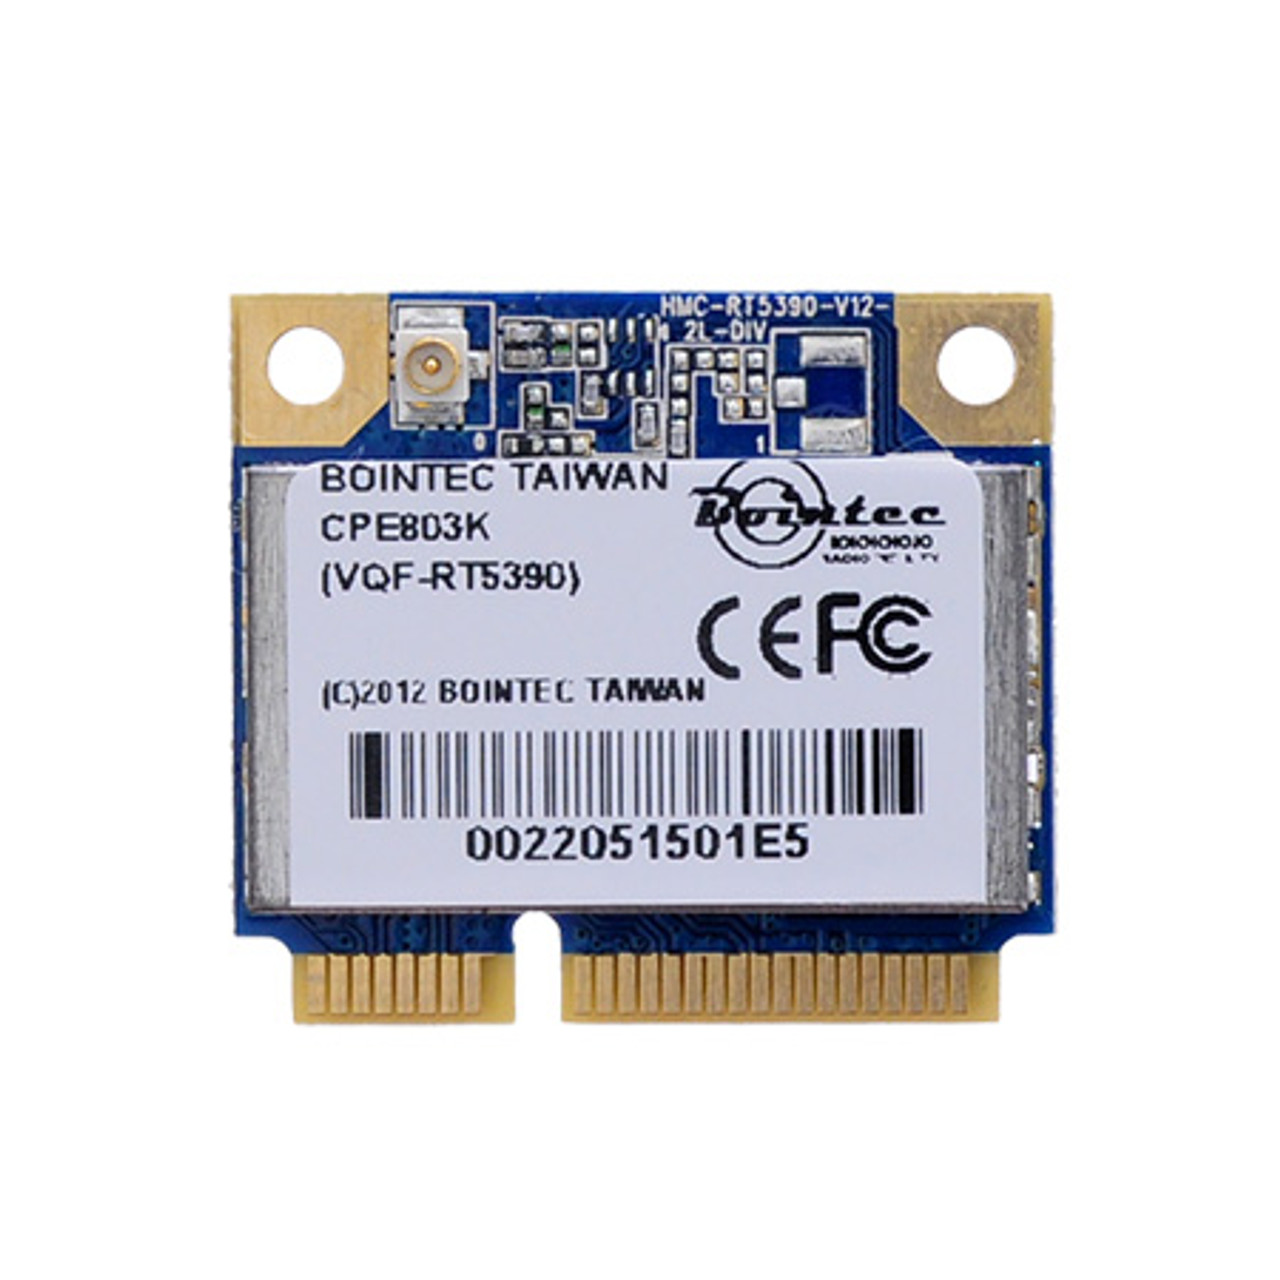 Cerveza inglesa soldadura Visualizar CPE803K (IEEE 802.11b/g/n Wi-Fi mini PCI Express Card) - M-FACTORS Storage